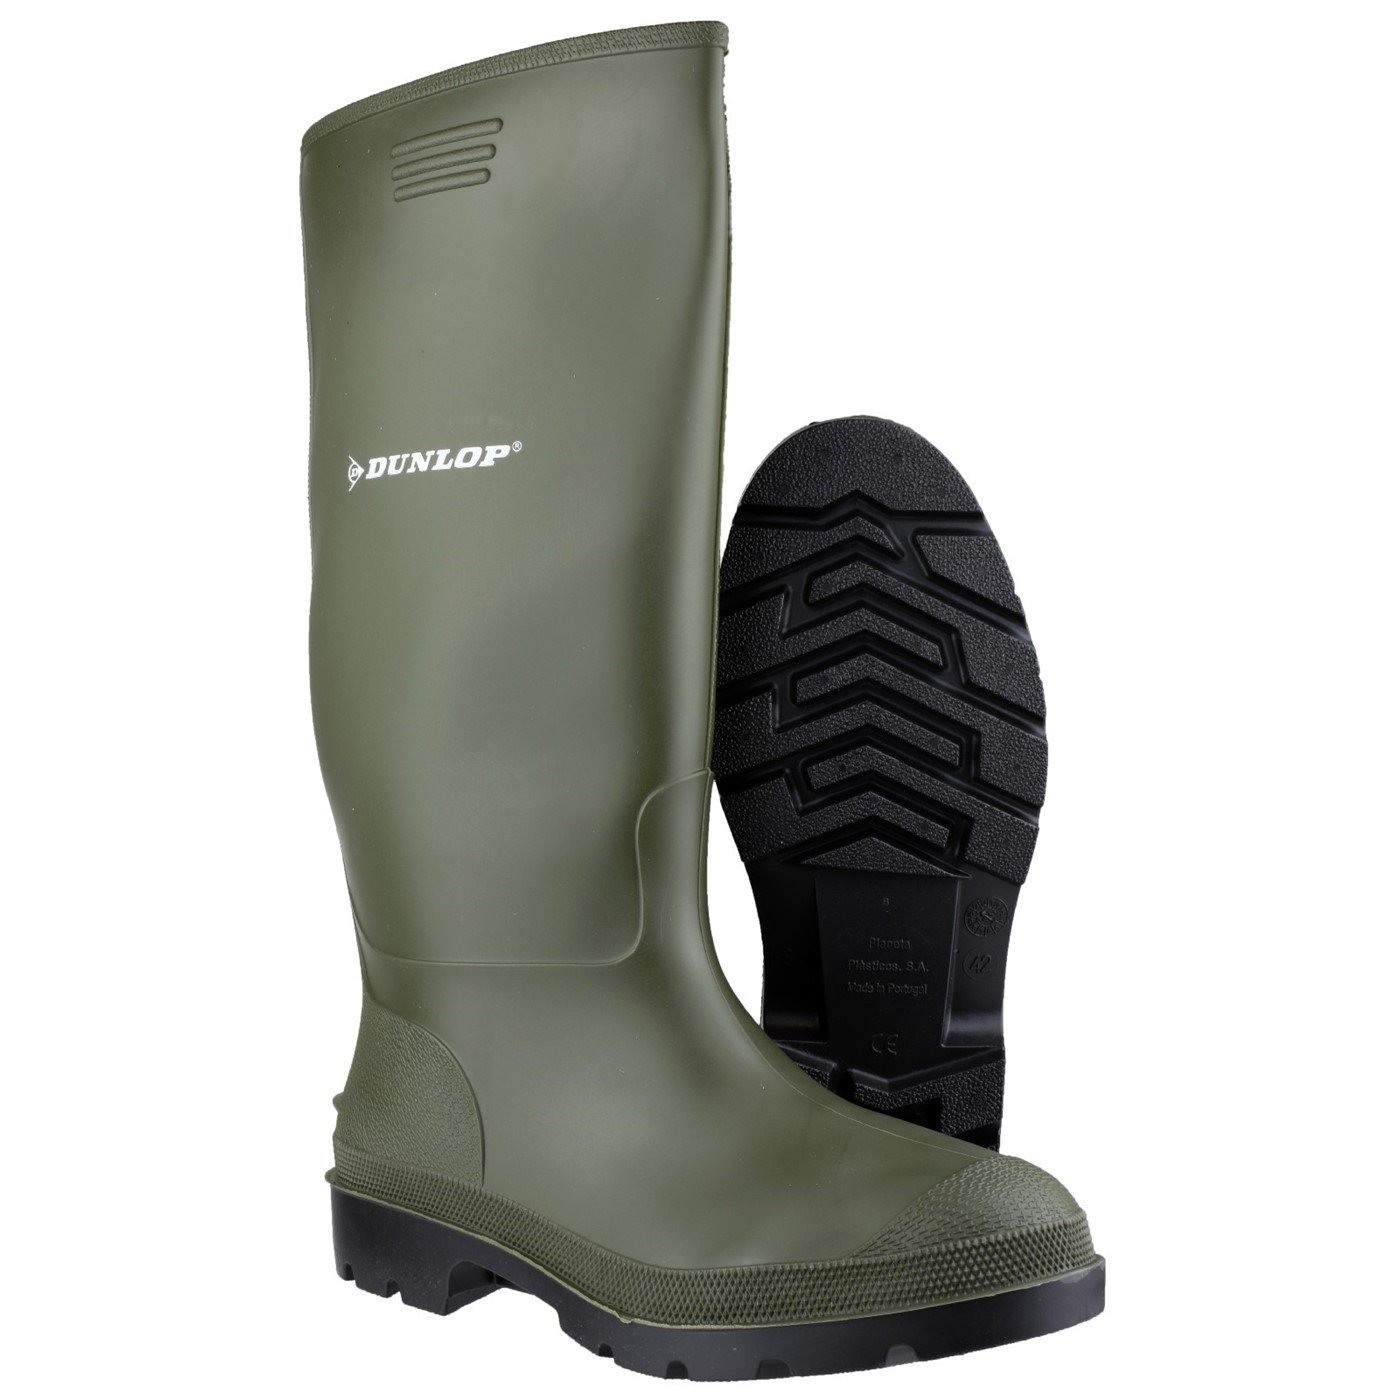 Dunlop Pricemaster Boot, Green, Size 12(47)